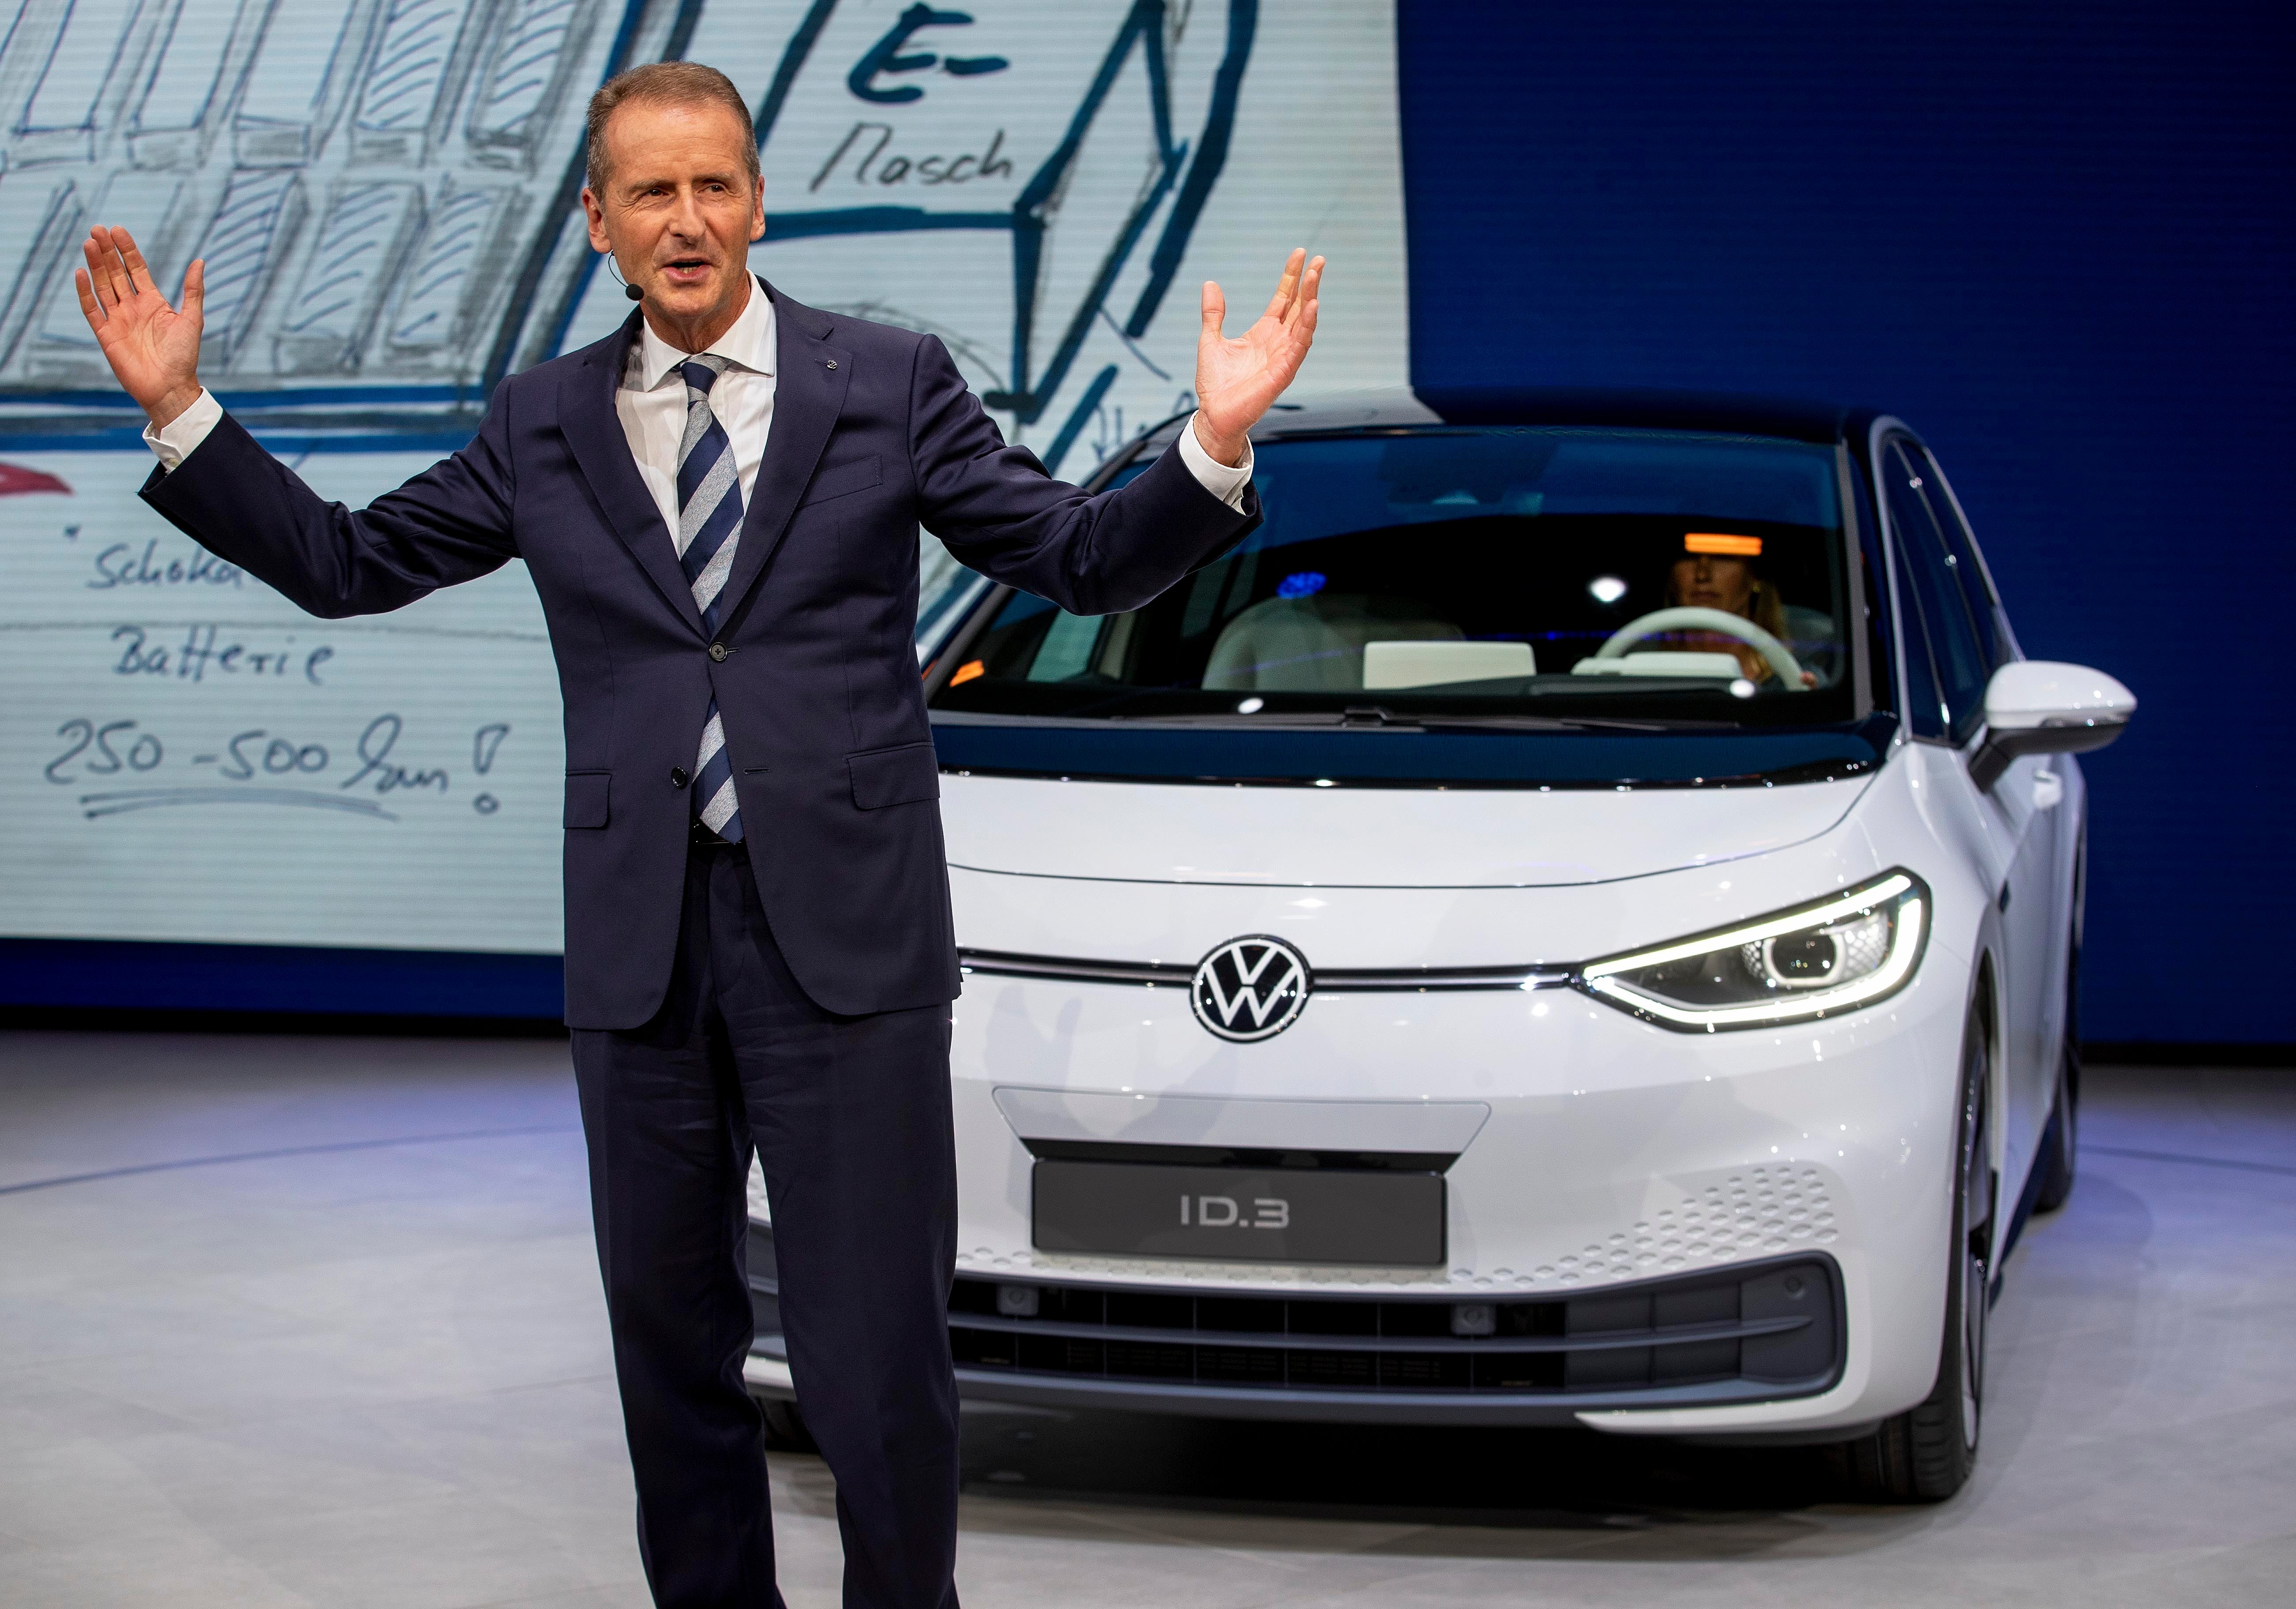 Fotografía de archivo del 9 de septiembre de 2019 del director general de Volkswagen, Herbert Diess, durante la presentación del nuevo sedán VW ID.3 en la Feria del Auto de Fráncfort, Alemania.&nbsp;